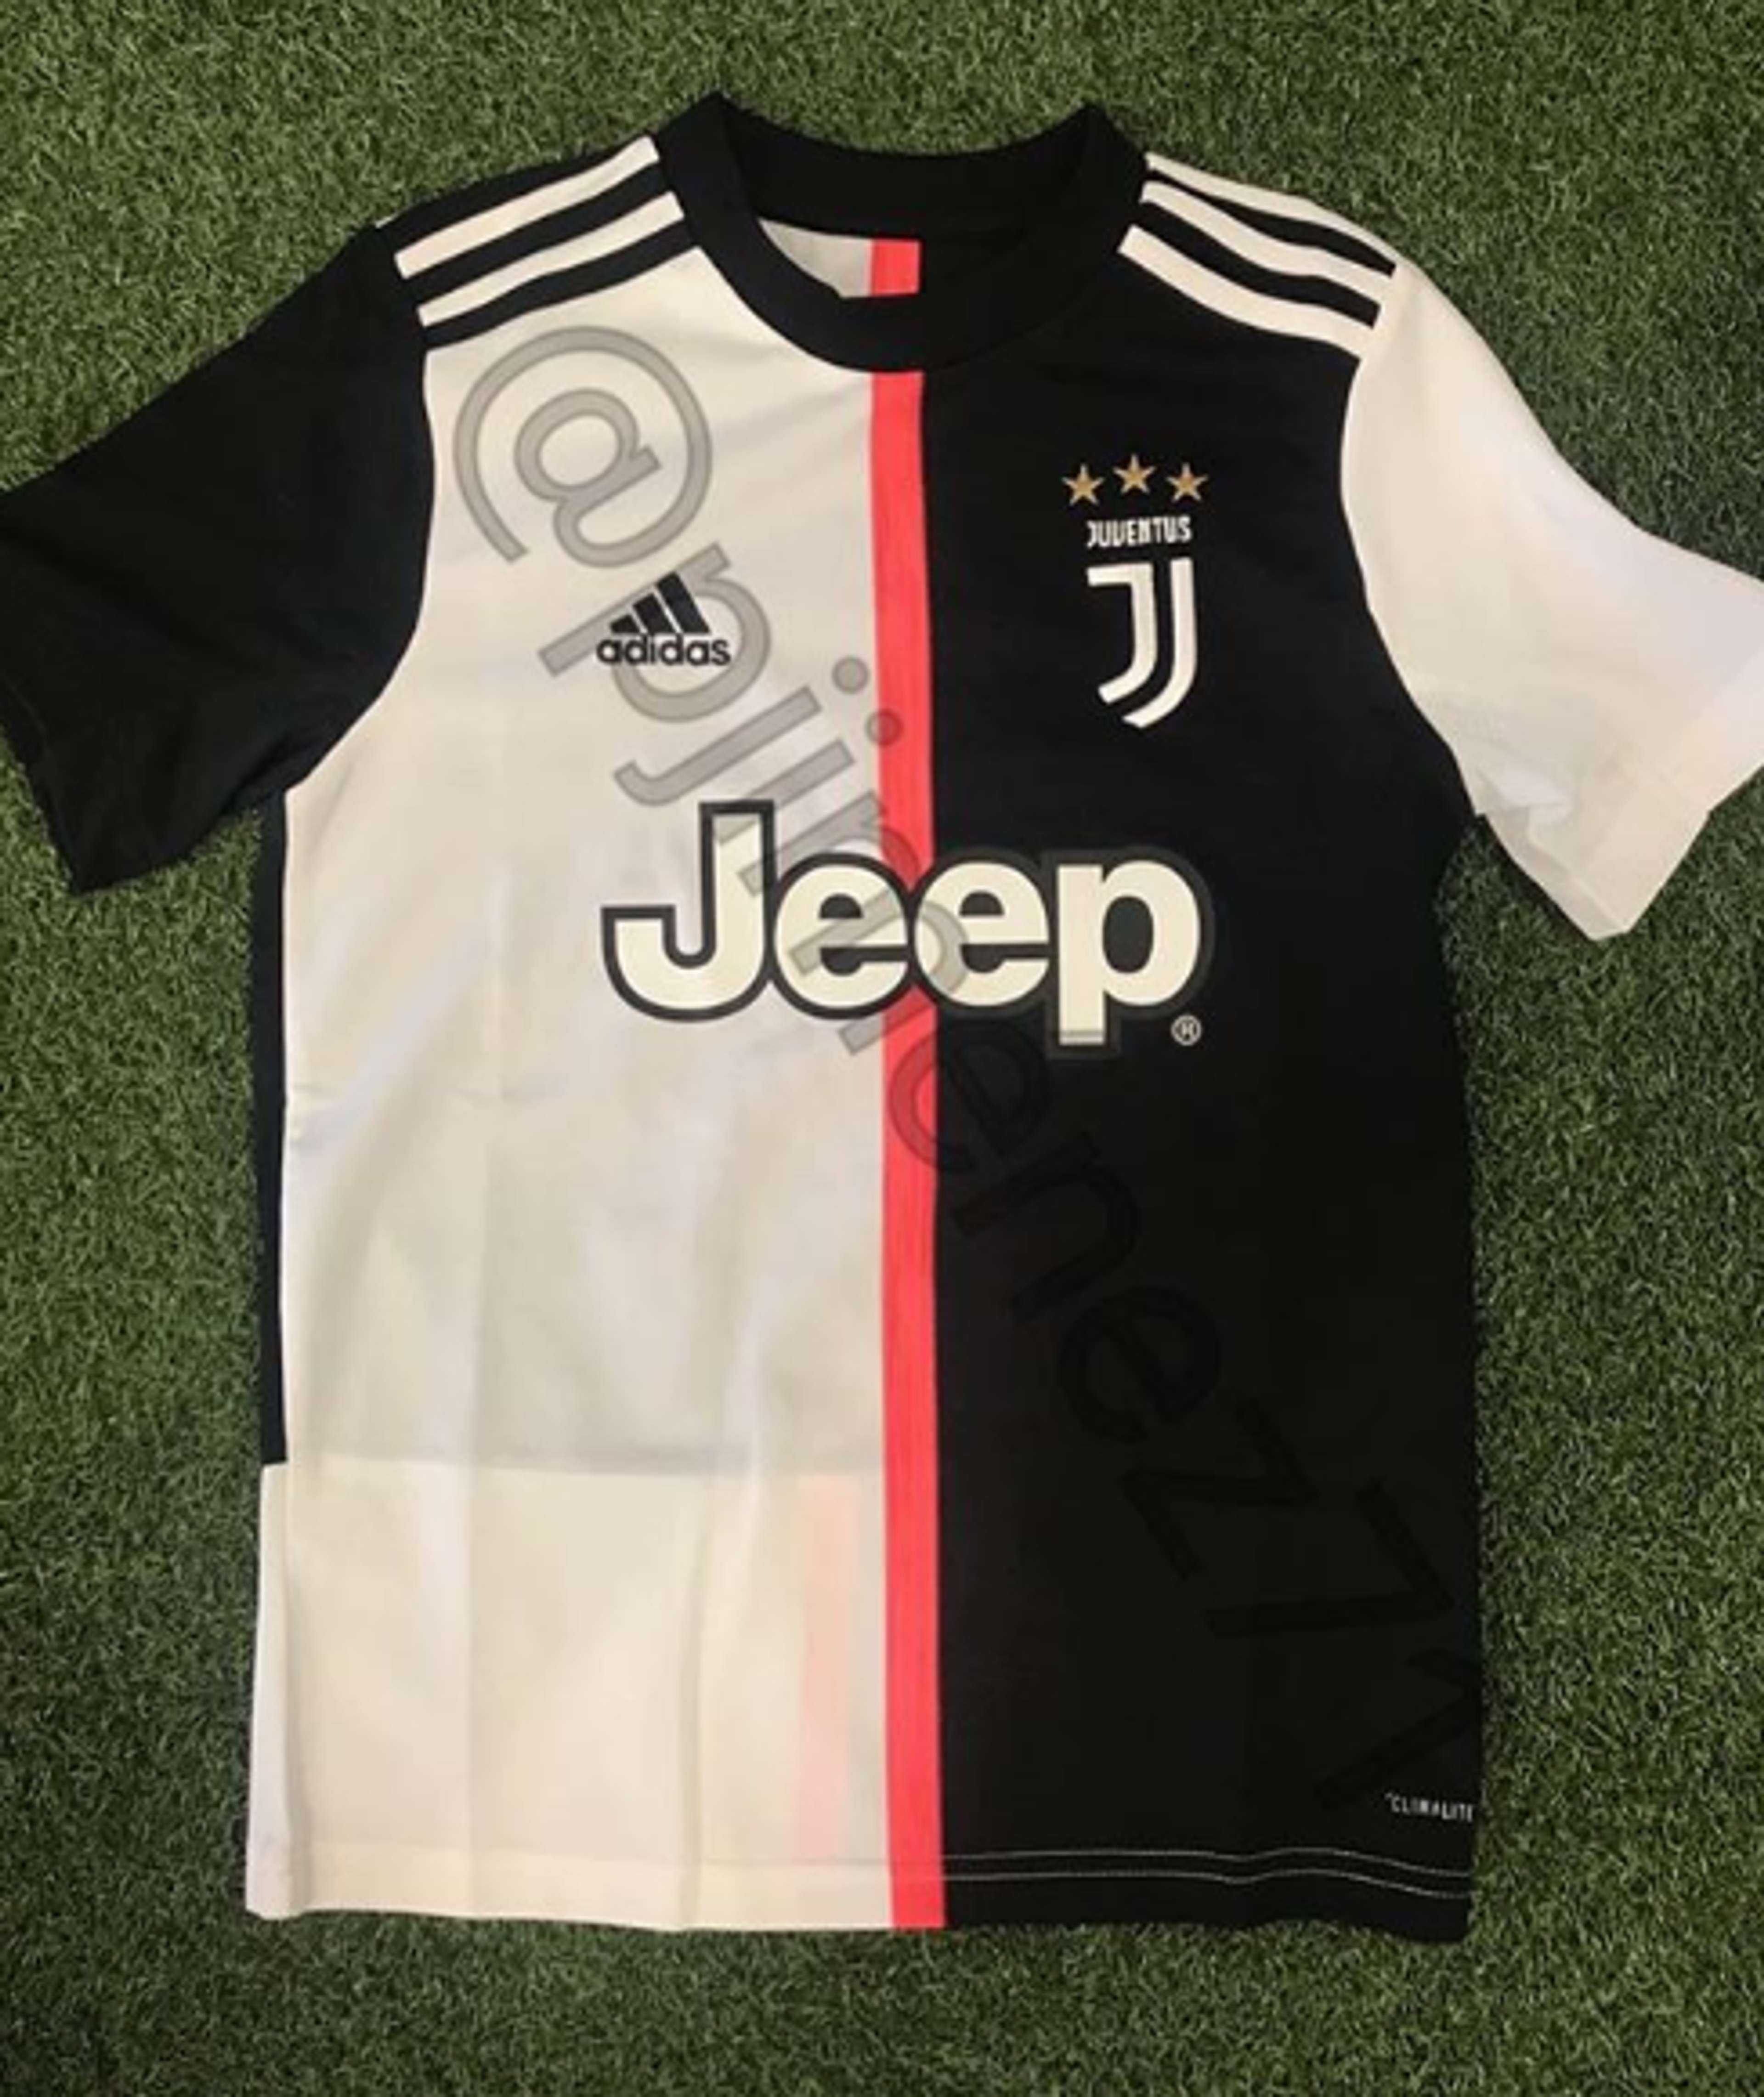 Camisa Juventus